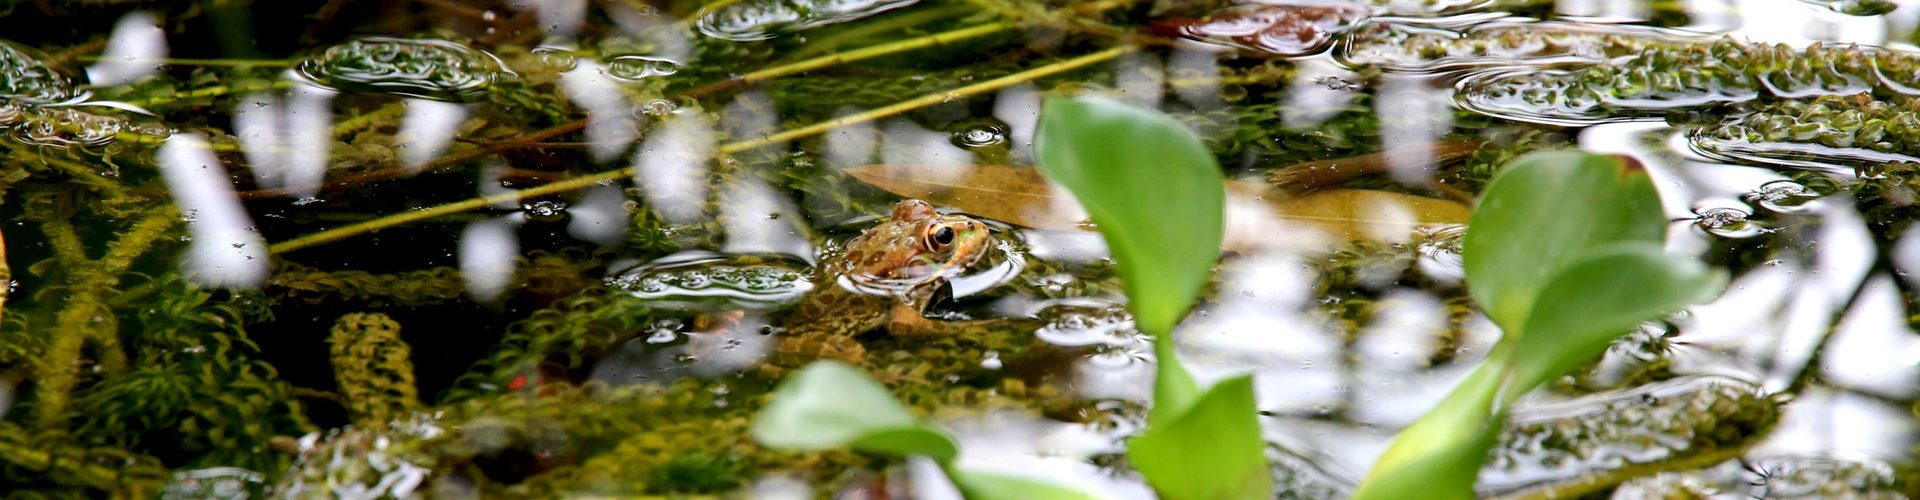 frog-nature-pond-96131